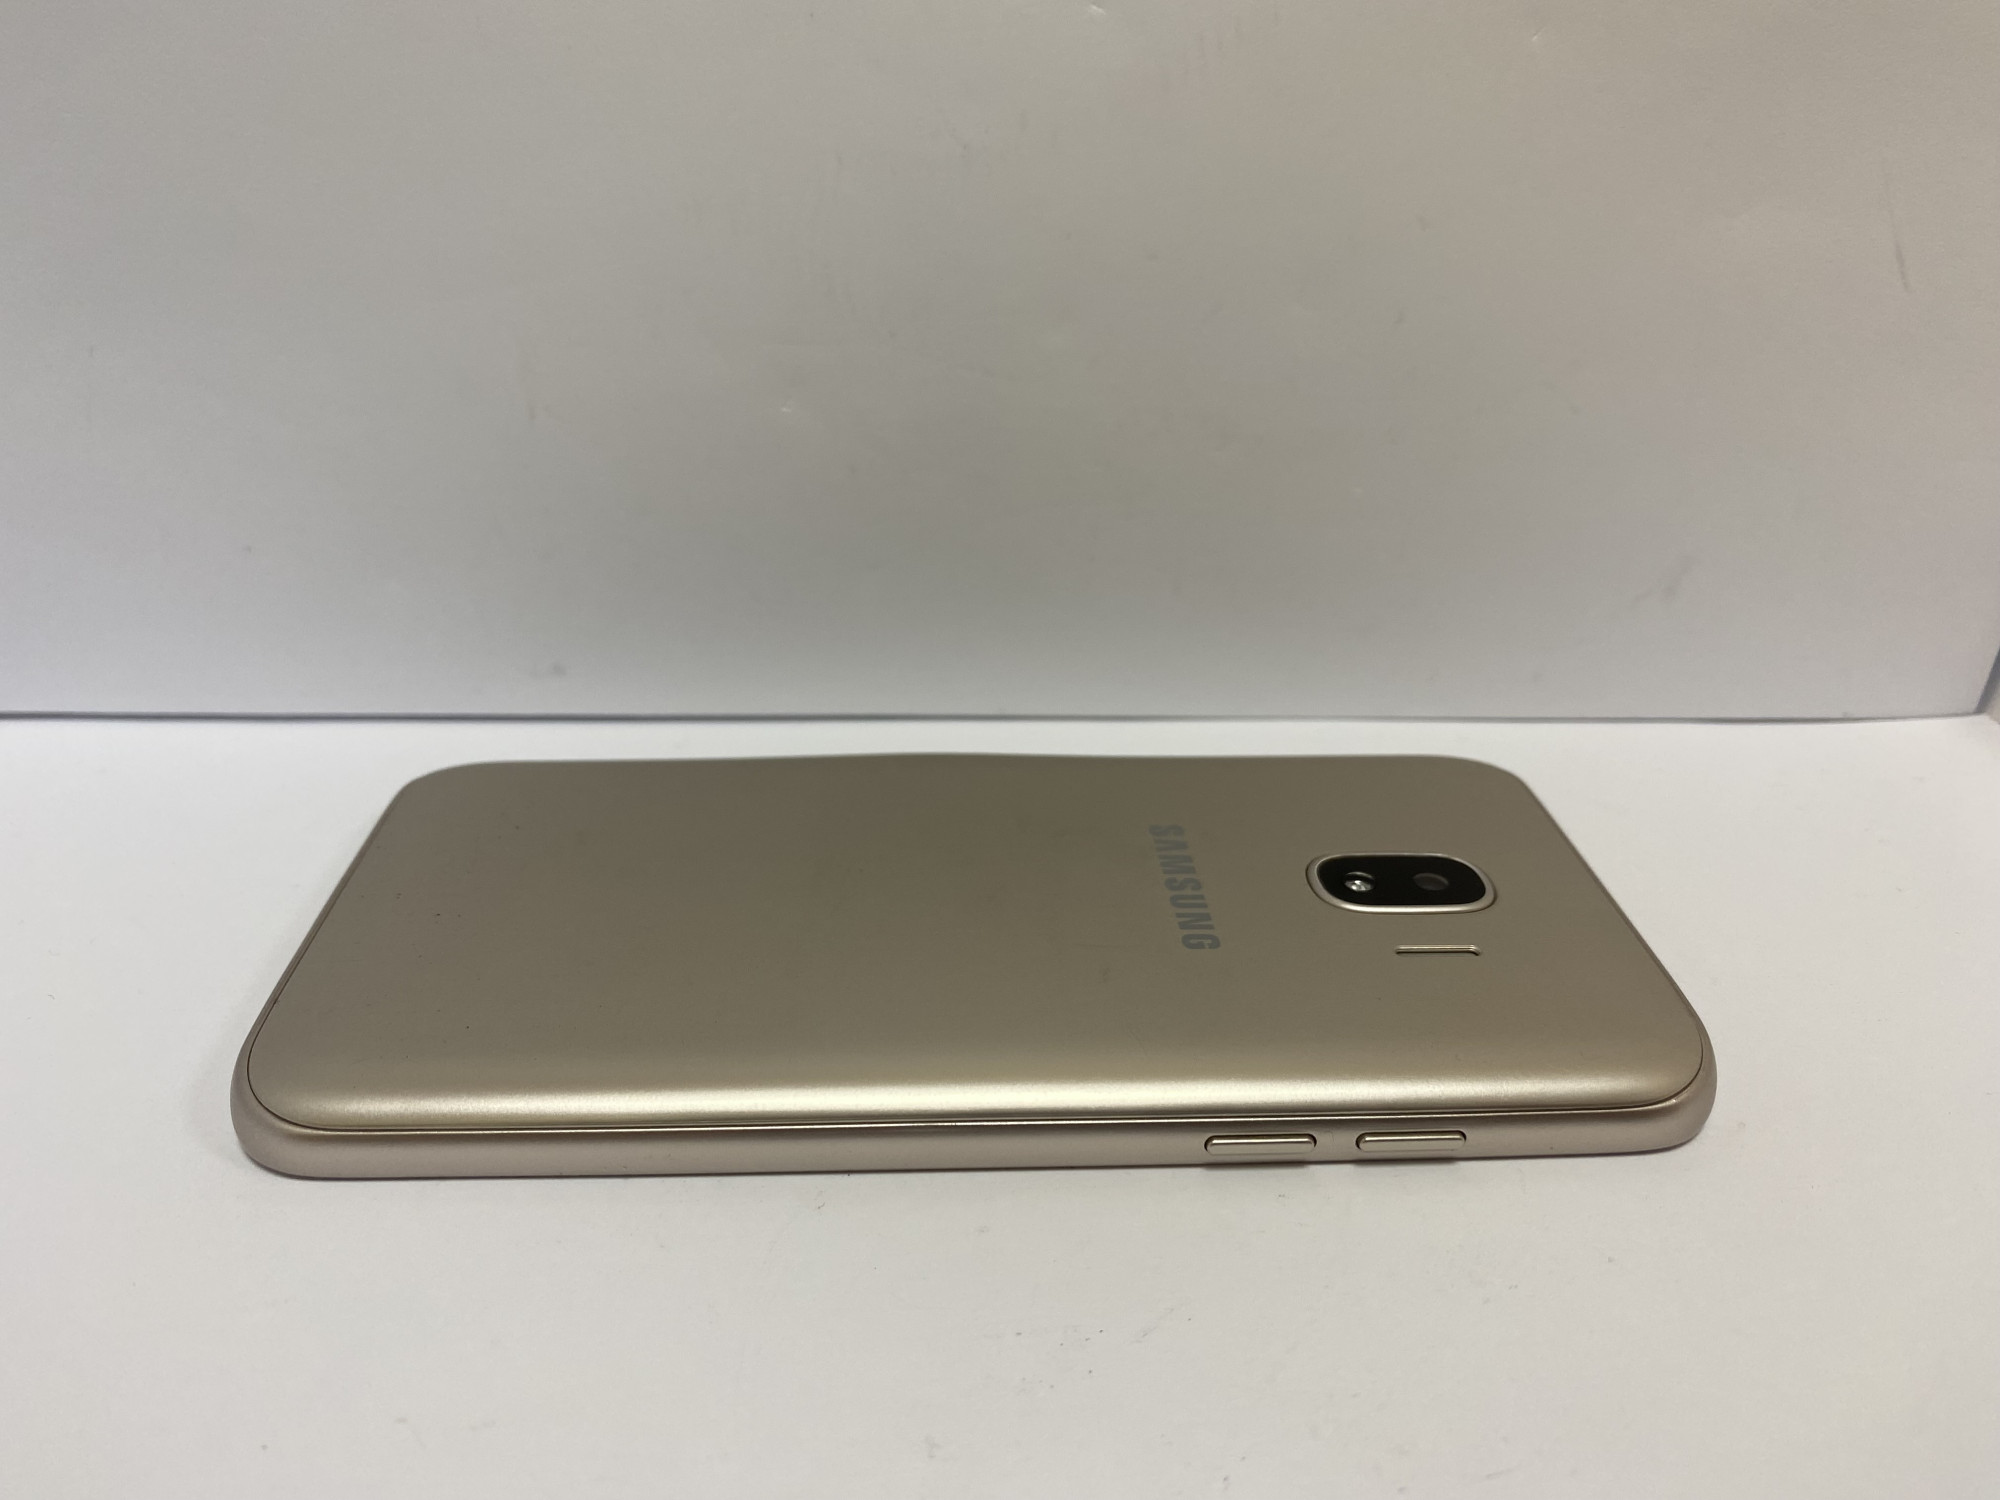 Samsung Galaxy J2 2018 (SM-J250F) 1/16Gb 4